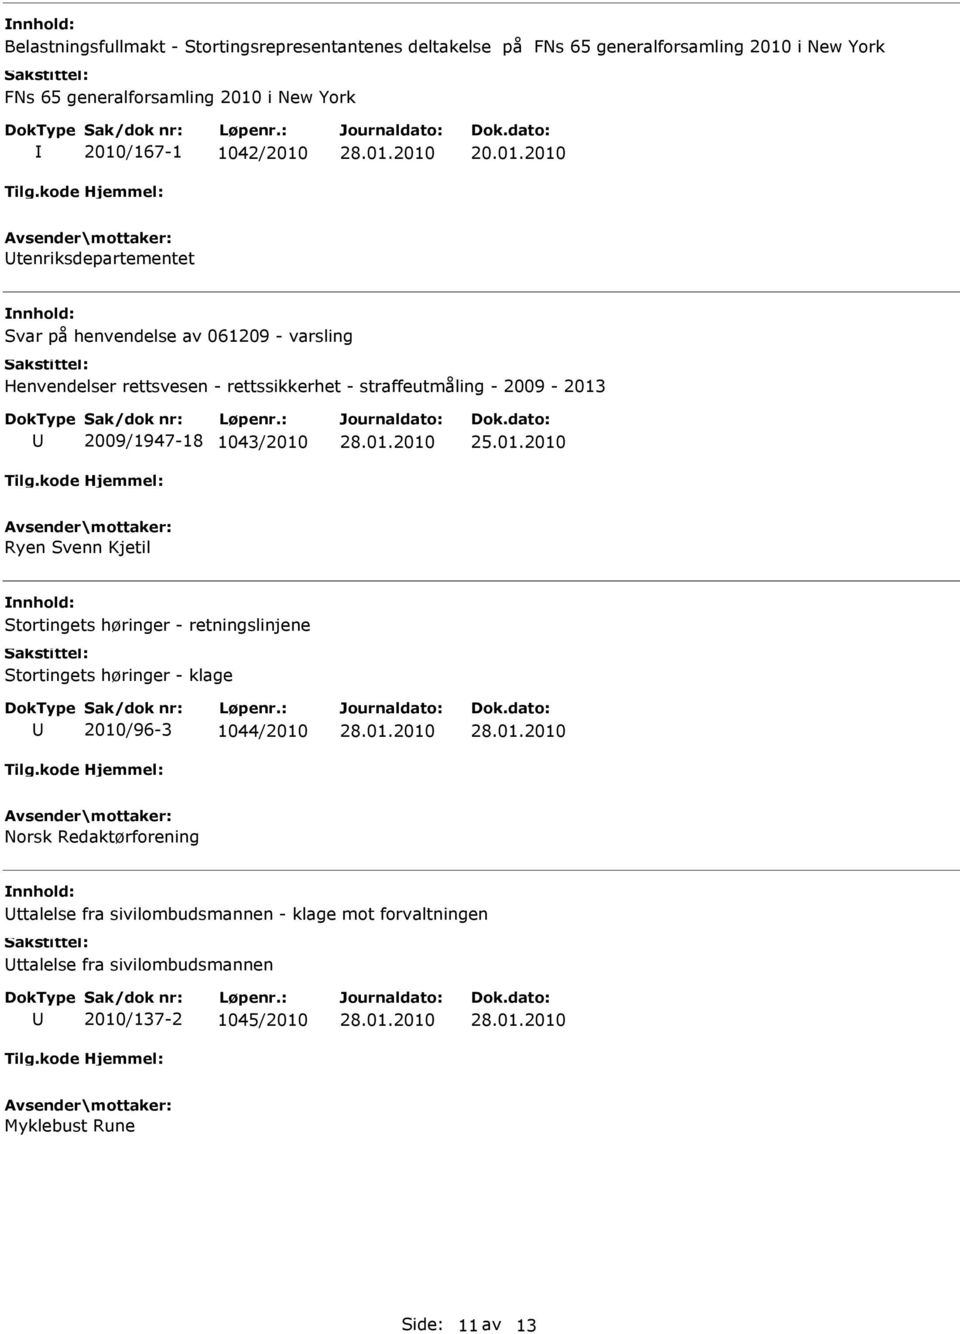 straffeutmåling - 2009-2013 2009/1947-18 1043/2010 Ryen Svenn Kjetil Stortingets høringer - retningslinjene Stortingets høringer - klage 2010/96-3